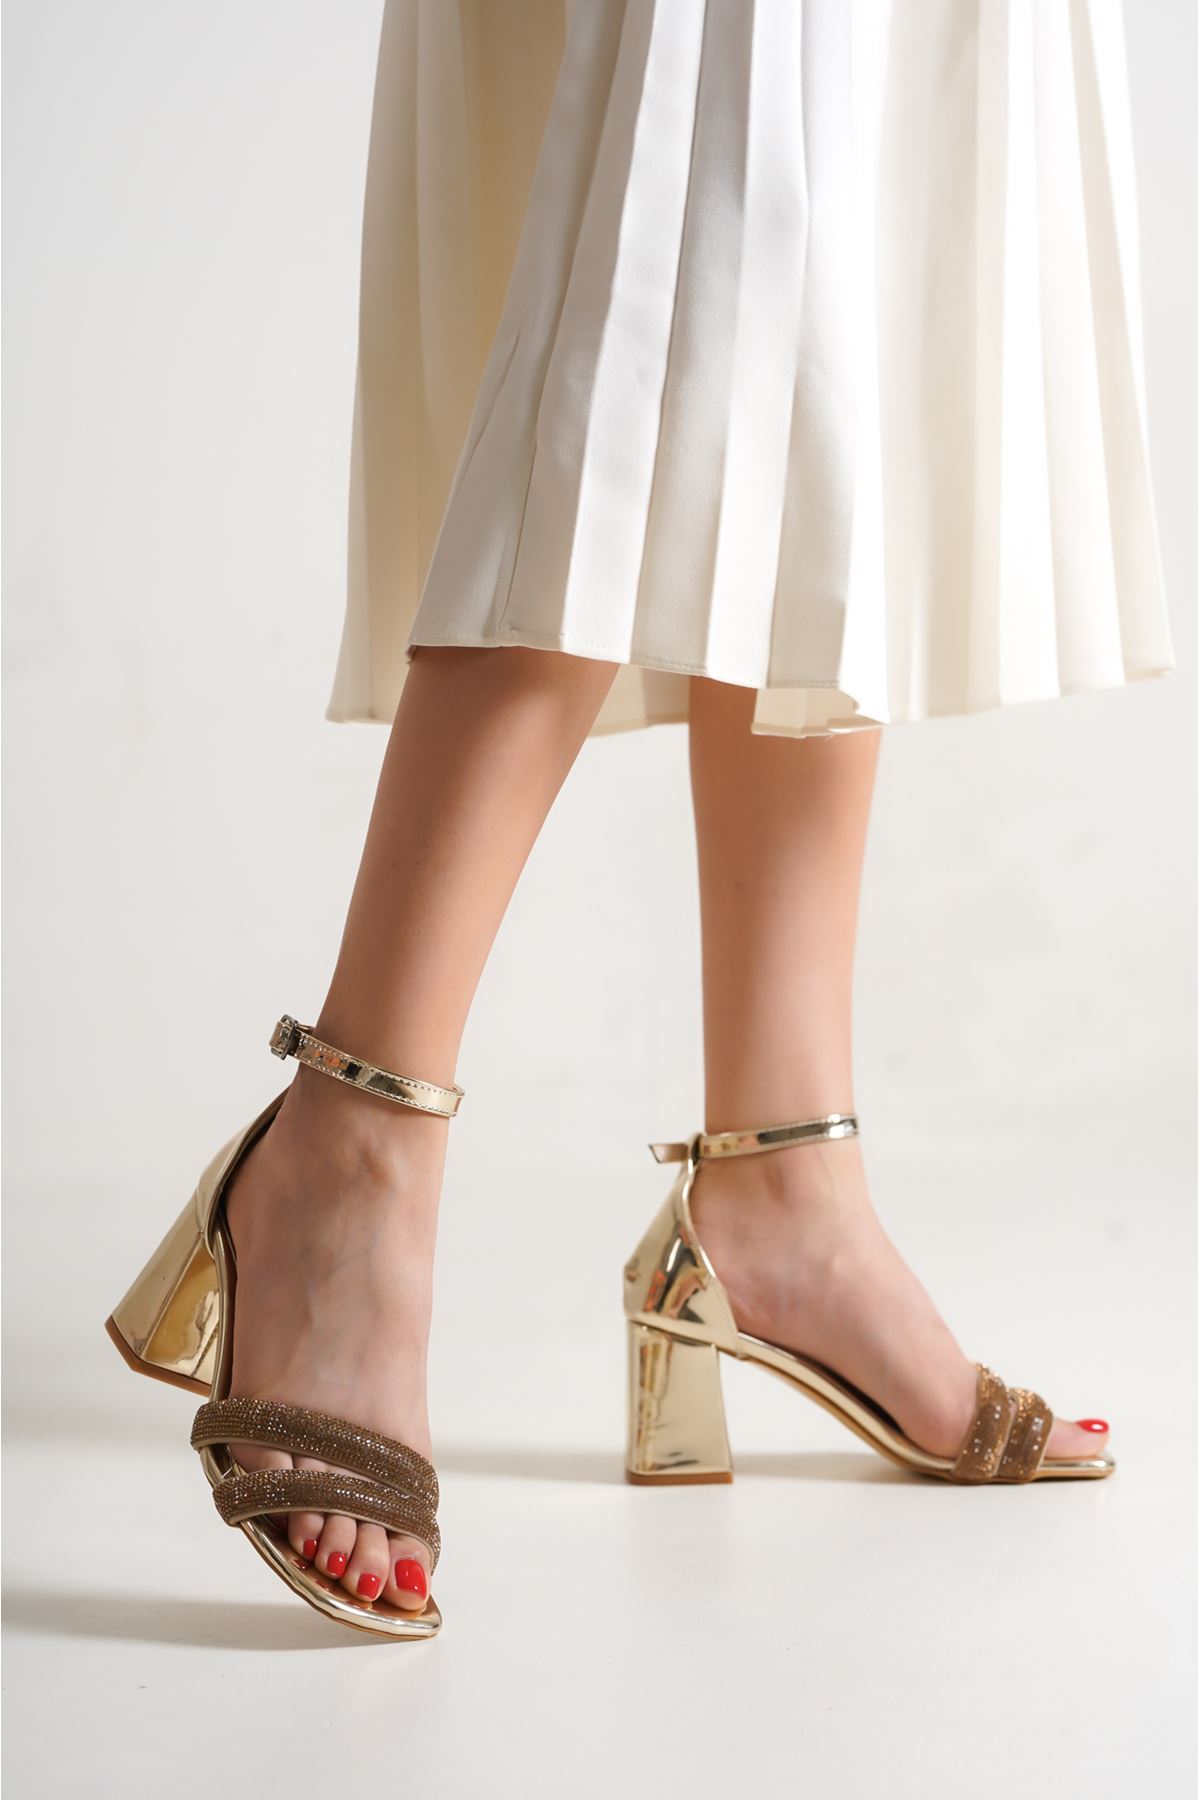 Evans Gold Rugan Taşlı Topuklu Kadın Ayakkabı